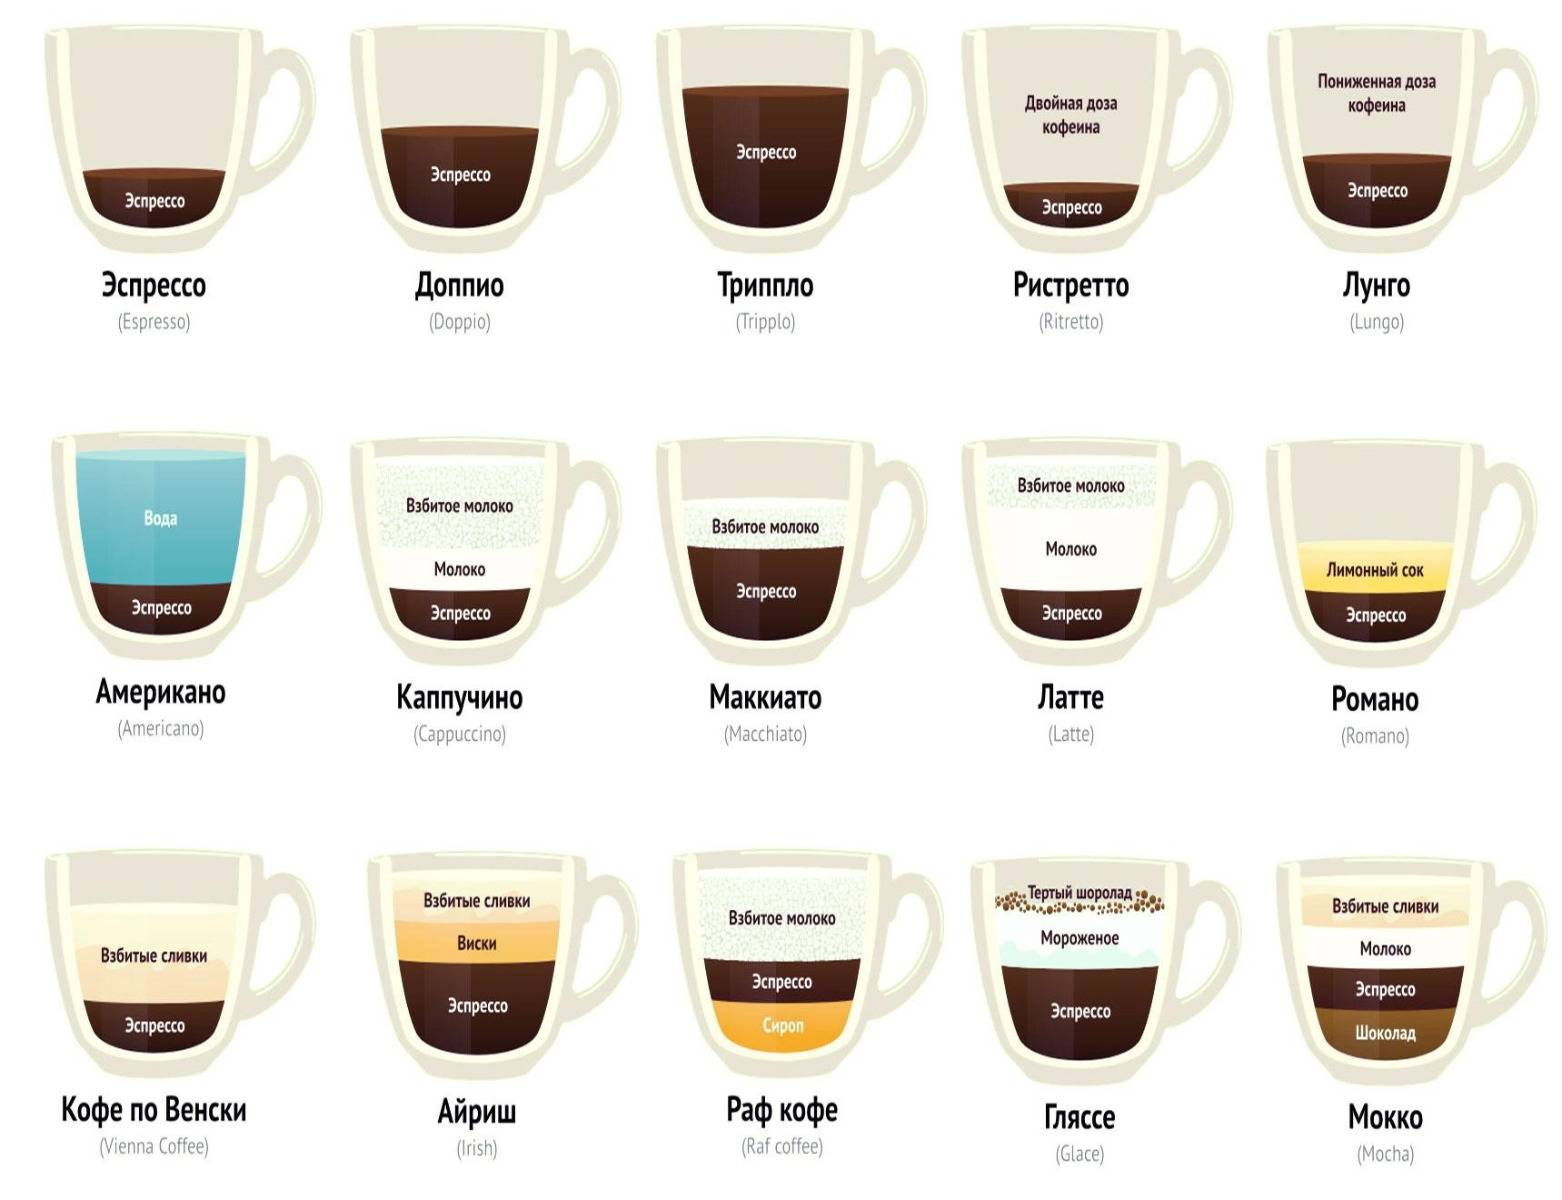 Как делают растворимый кофе?